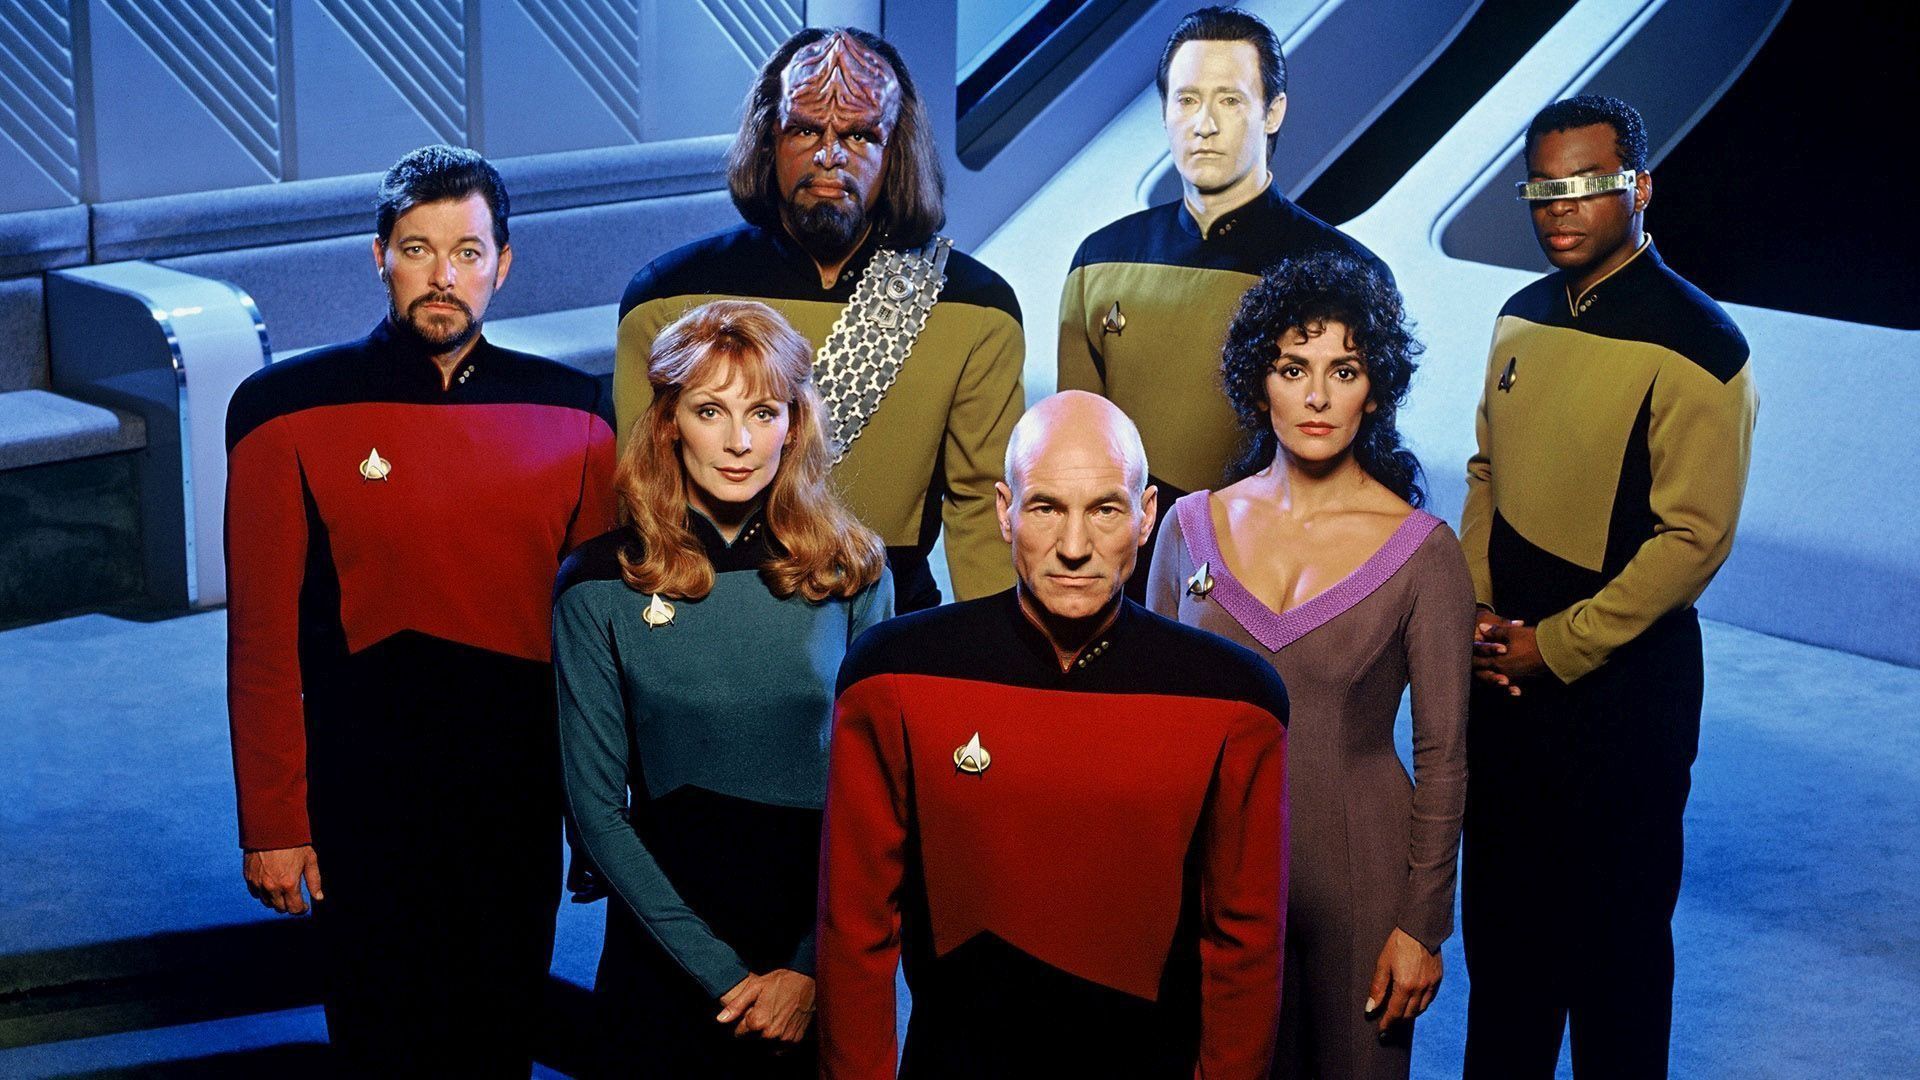 Novo trailer de Star Trek: Picard mostrado na SDCC mostra retorno do elenco de Star Trek: The Next Generation. Confira!